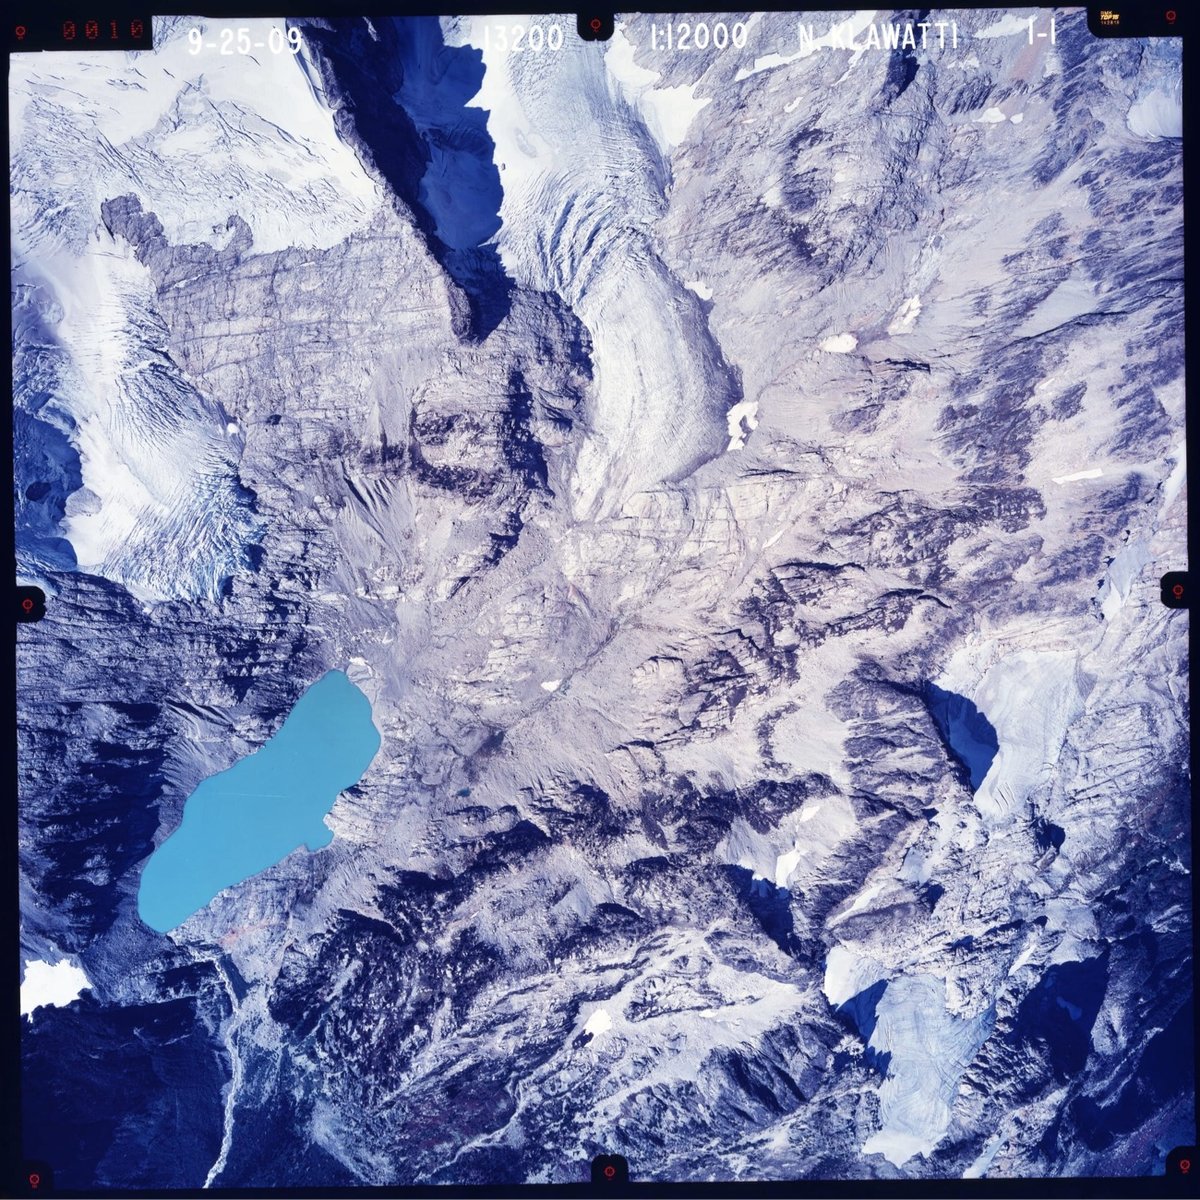 aerial color photo of a glacier